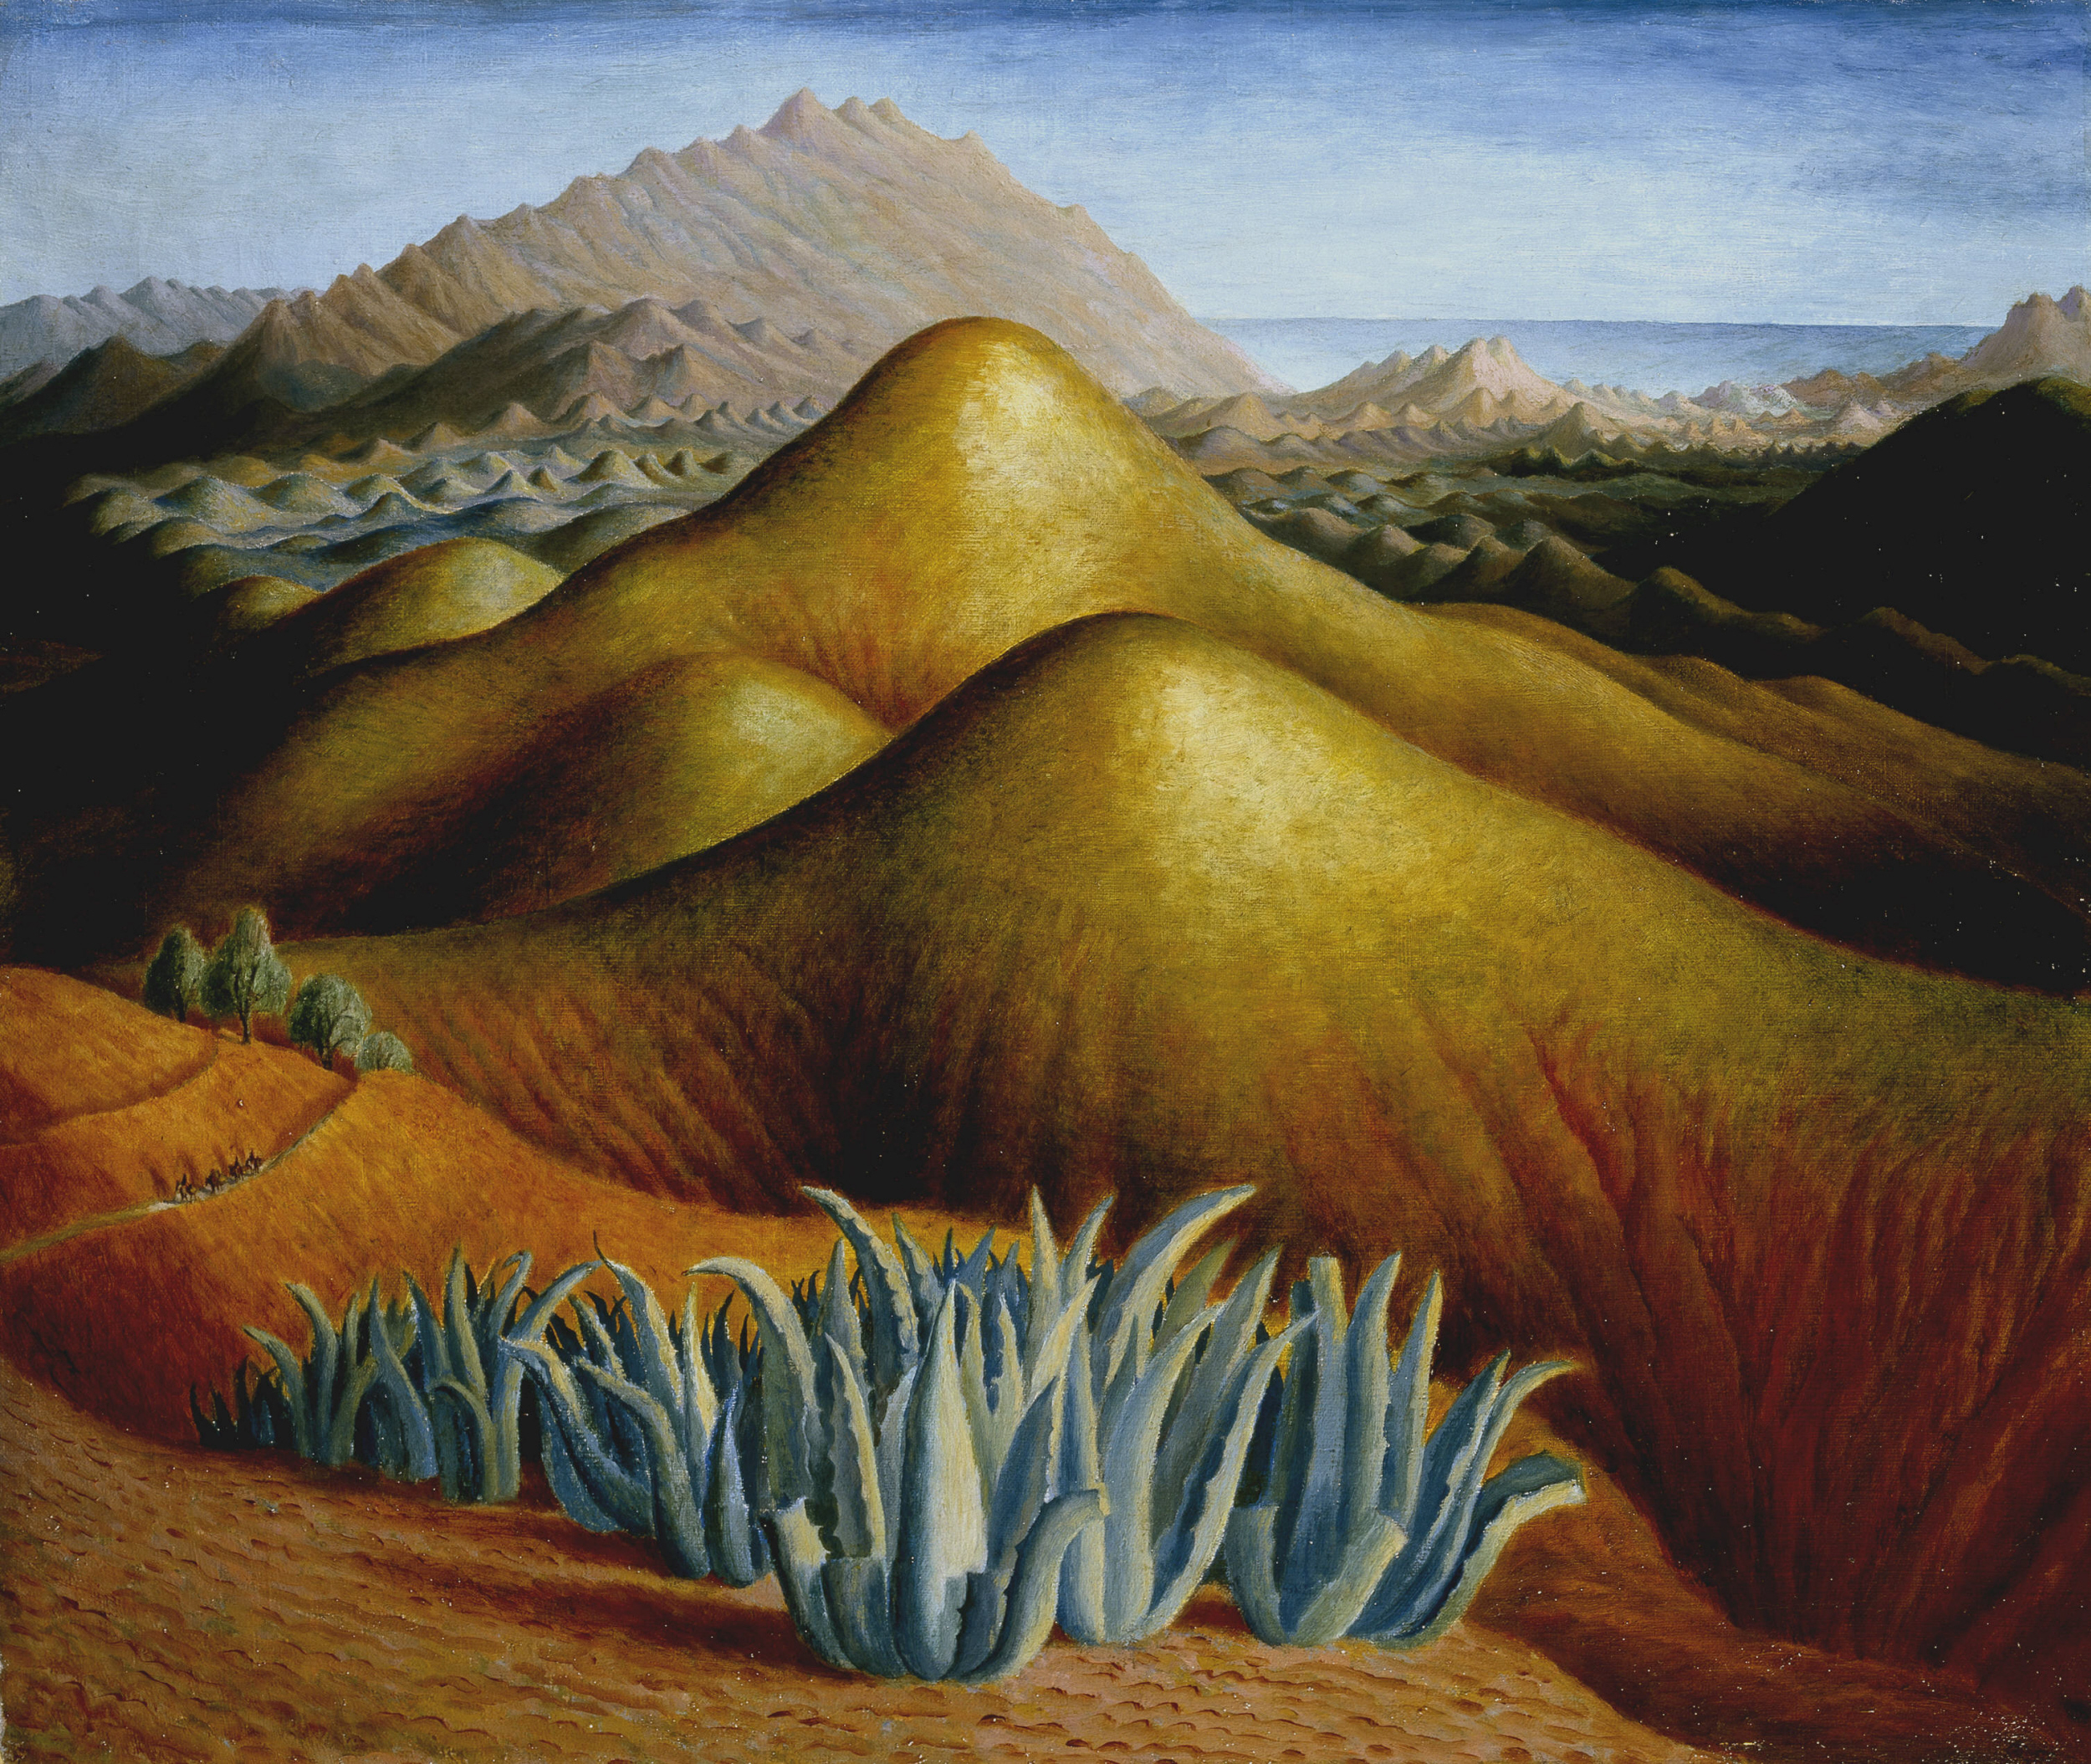 Paisaje español con montañas by Dora Carrington - c. 1924 - 55,9 x 66,7 cm Tate Modern